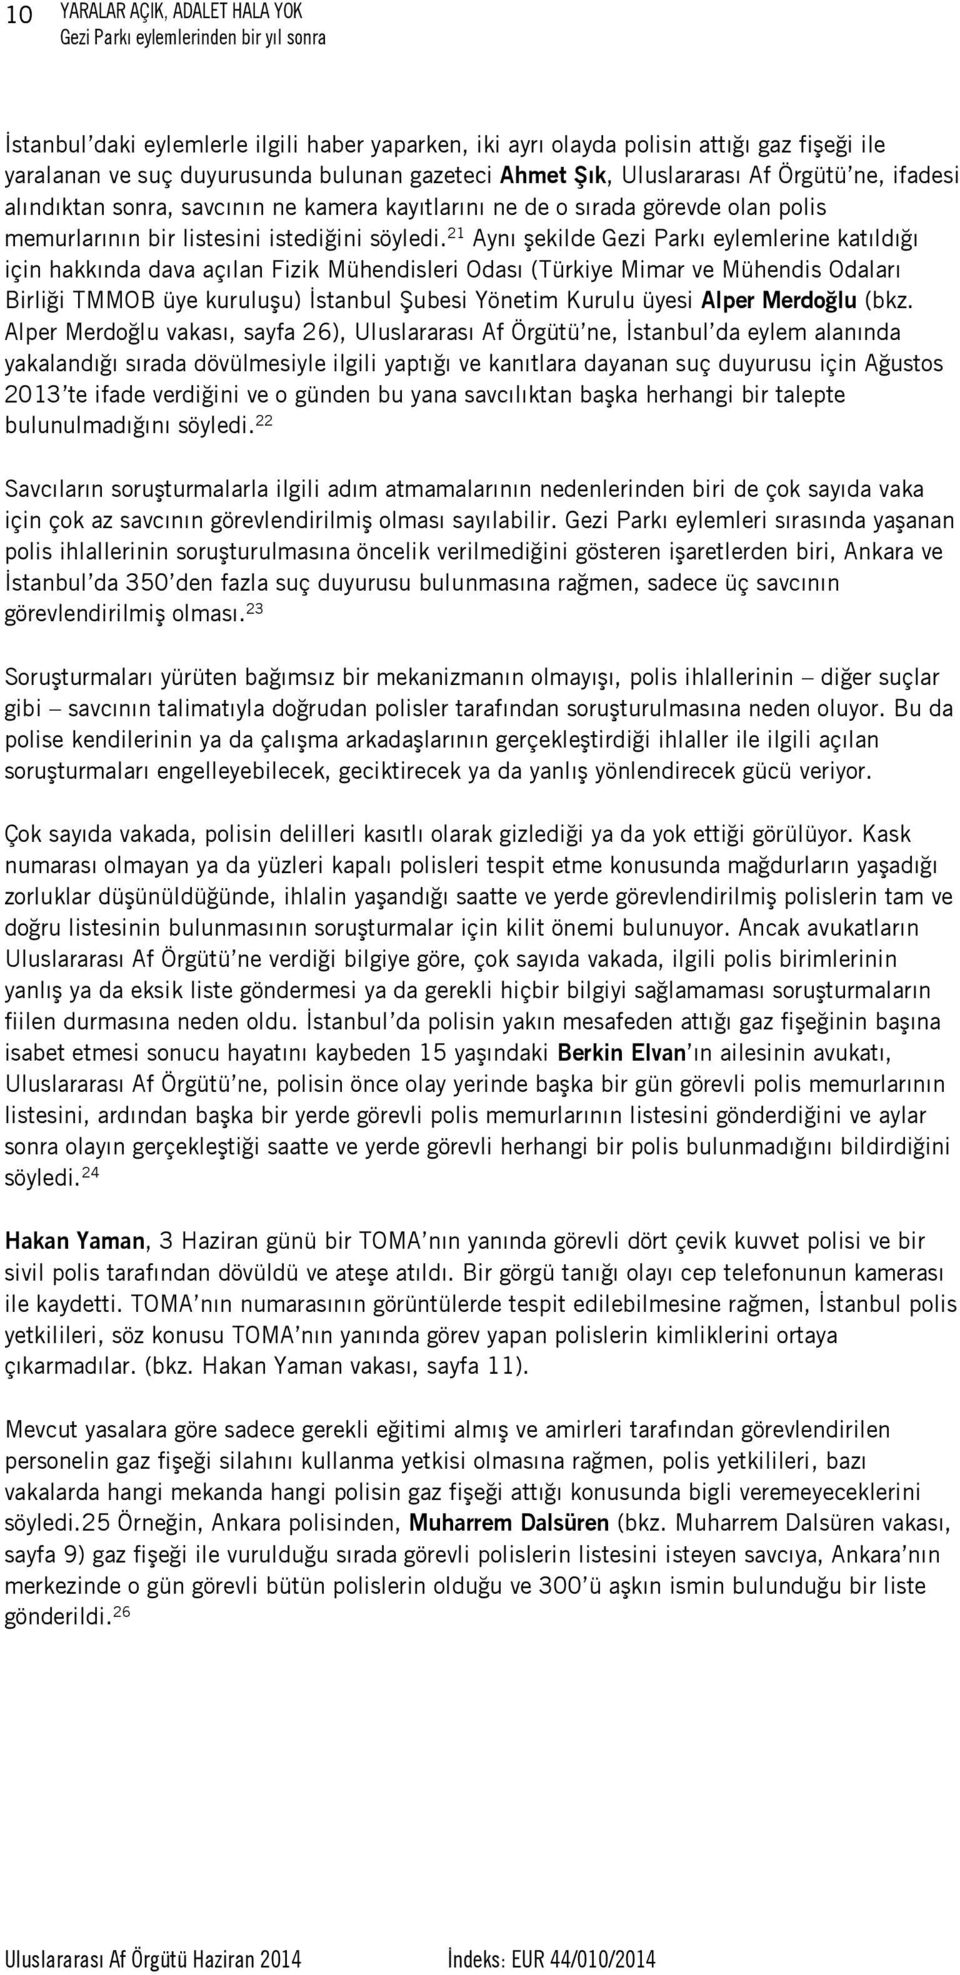 21 Aynı şekilde Gezi Parkı eylemlerine katıldığı için hakkında dava açılan Fizik Mühendisleri Odası (Türkiye Mimar ve Mühendis Odaları Birliği TMMOB üye kuruluşu) İstanbul Şubesi Yönetim Kurulu üyesi